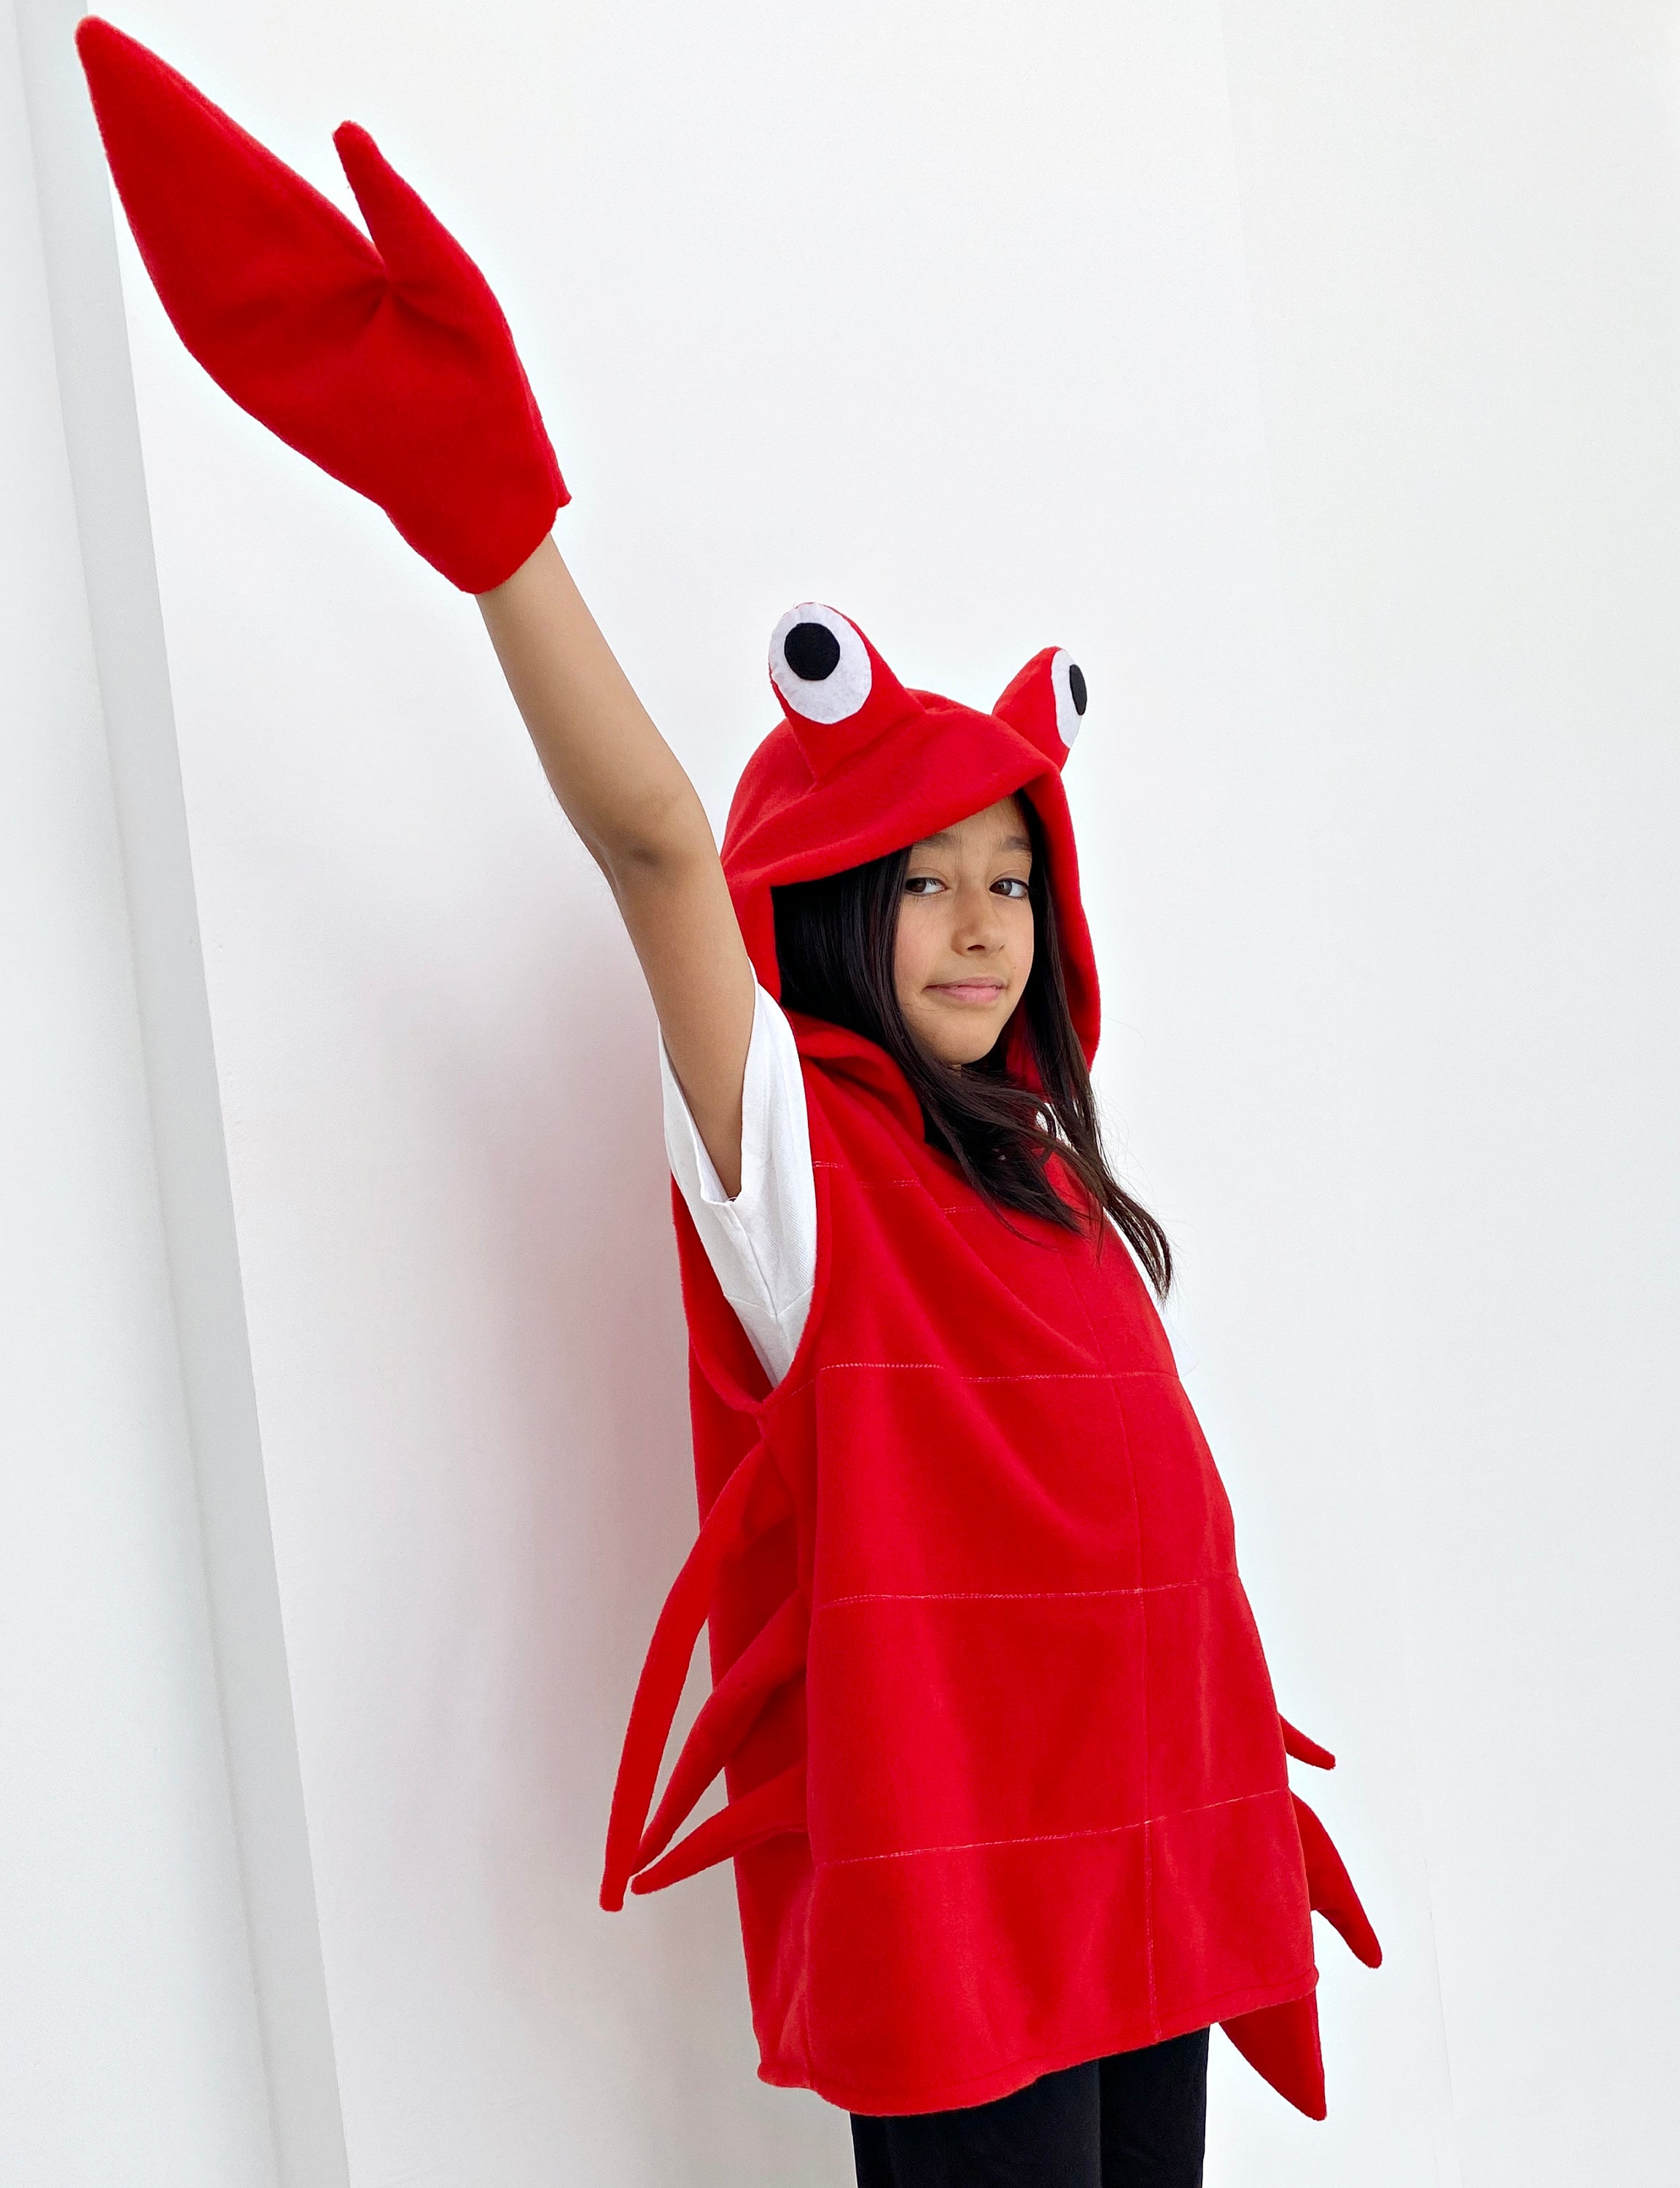 Tradineur - Disfraz de cangrejo rojo para adulto, poliéster, incluye túnica  con capucha y guantes, atuendo de carnaval, Hallowee